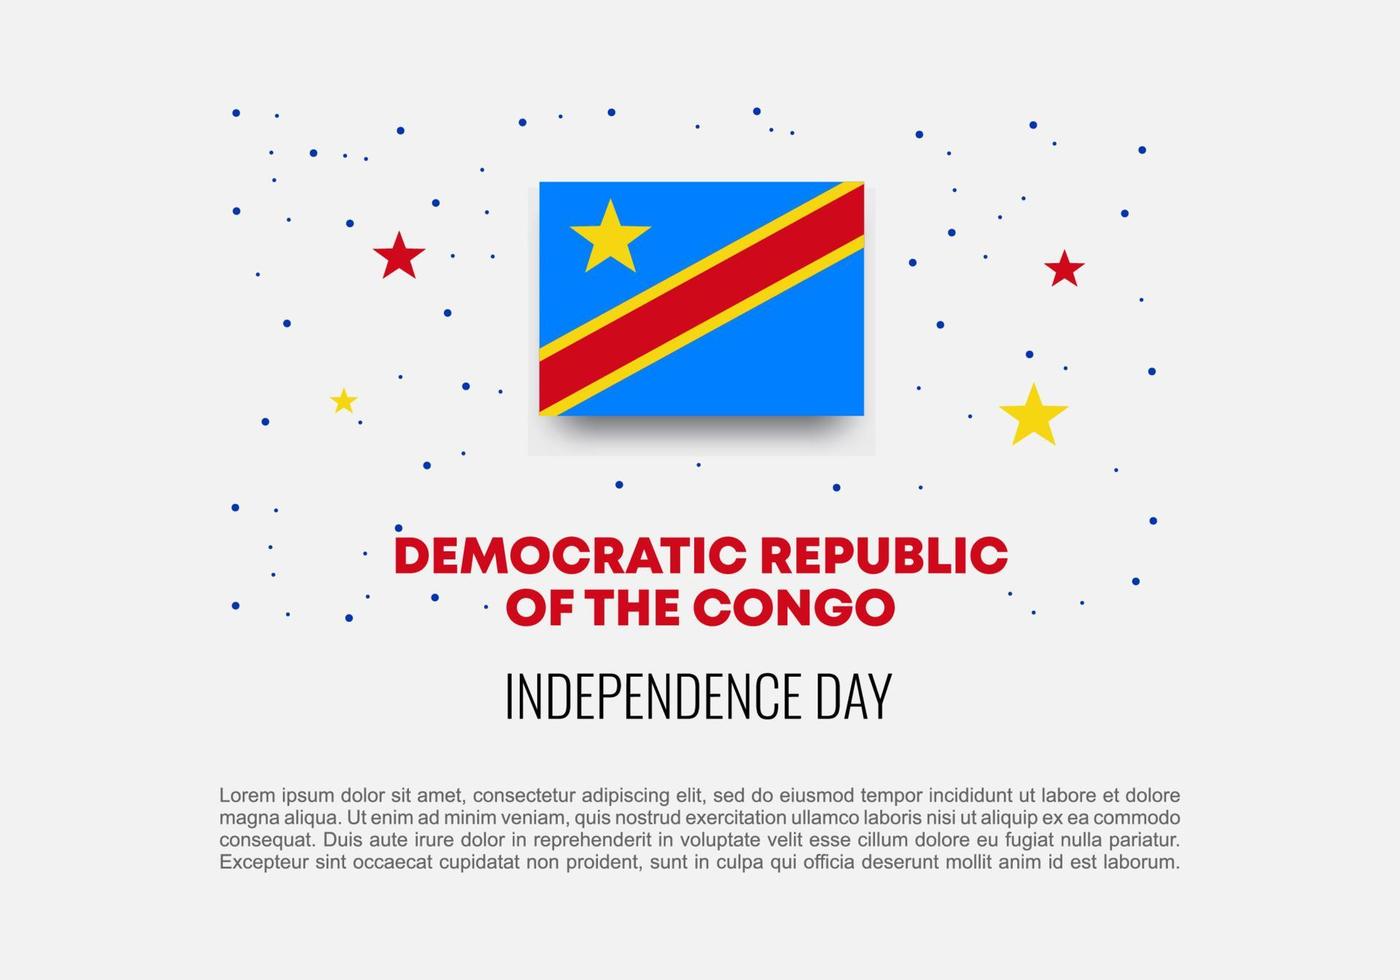 fond de la fête de l'indépendance de la république du congo pour la célébration nationale vecteur